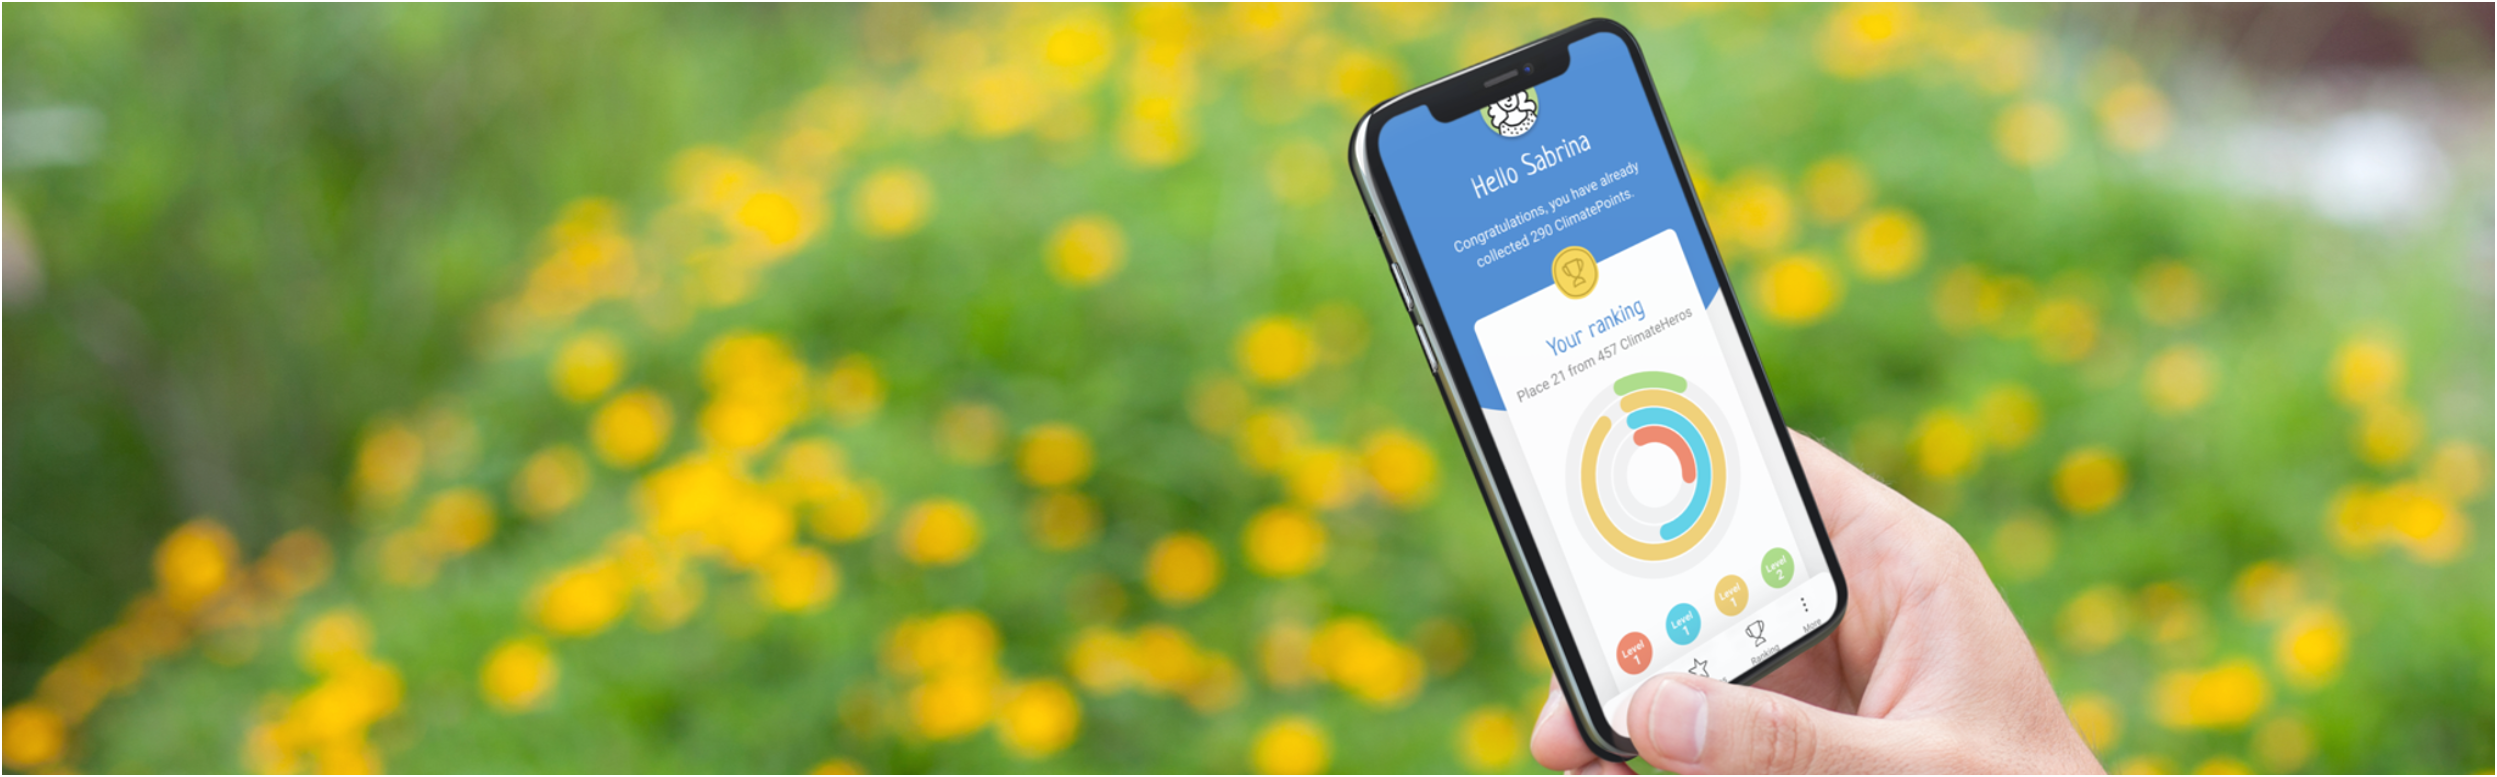 Banner Handy und App ClimateActions mit Busch mit Blumen im Hintergrund